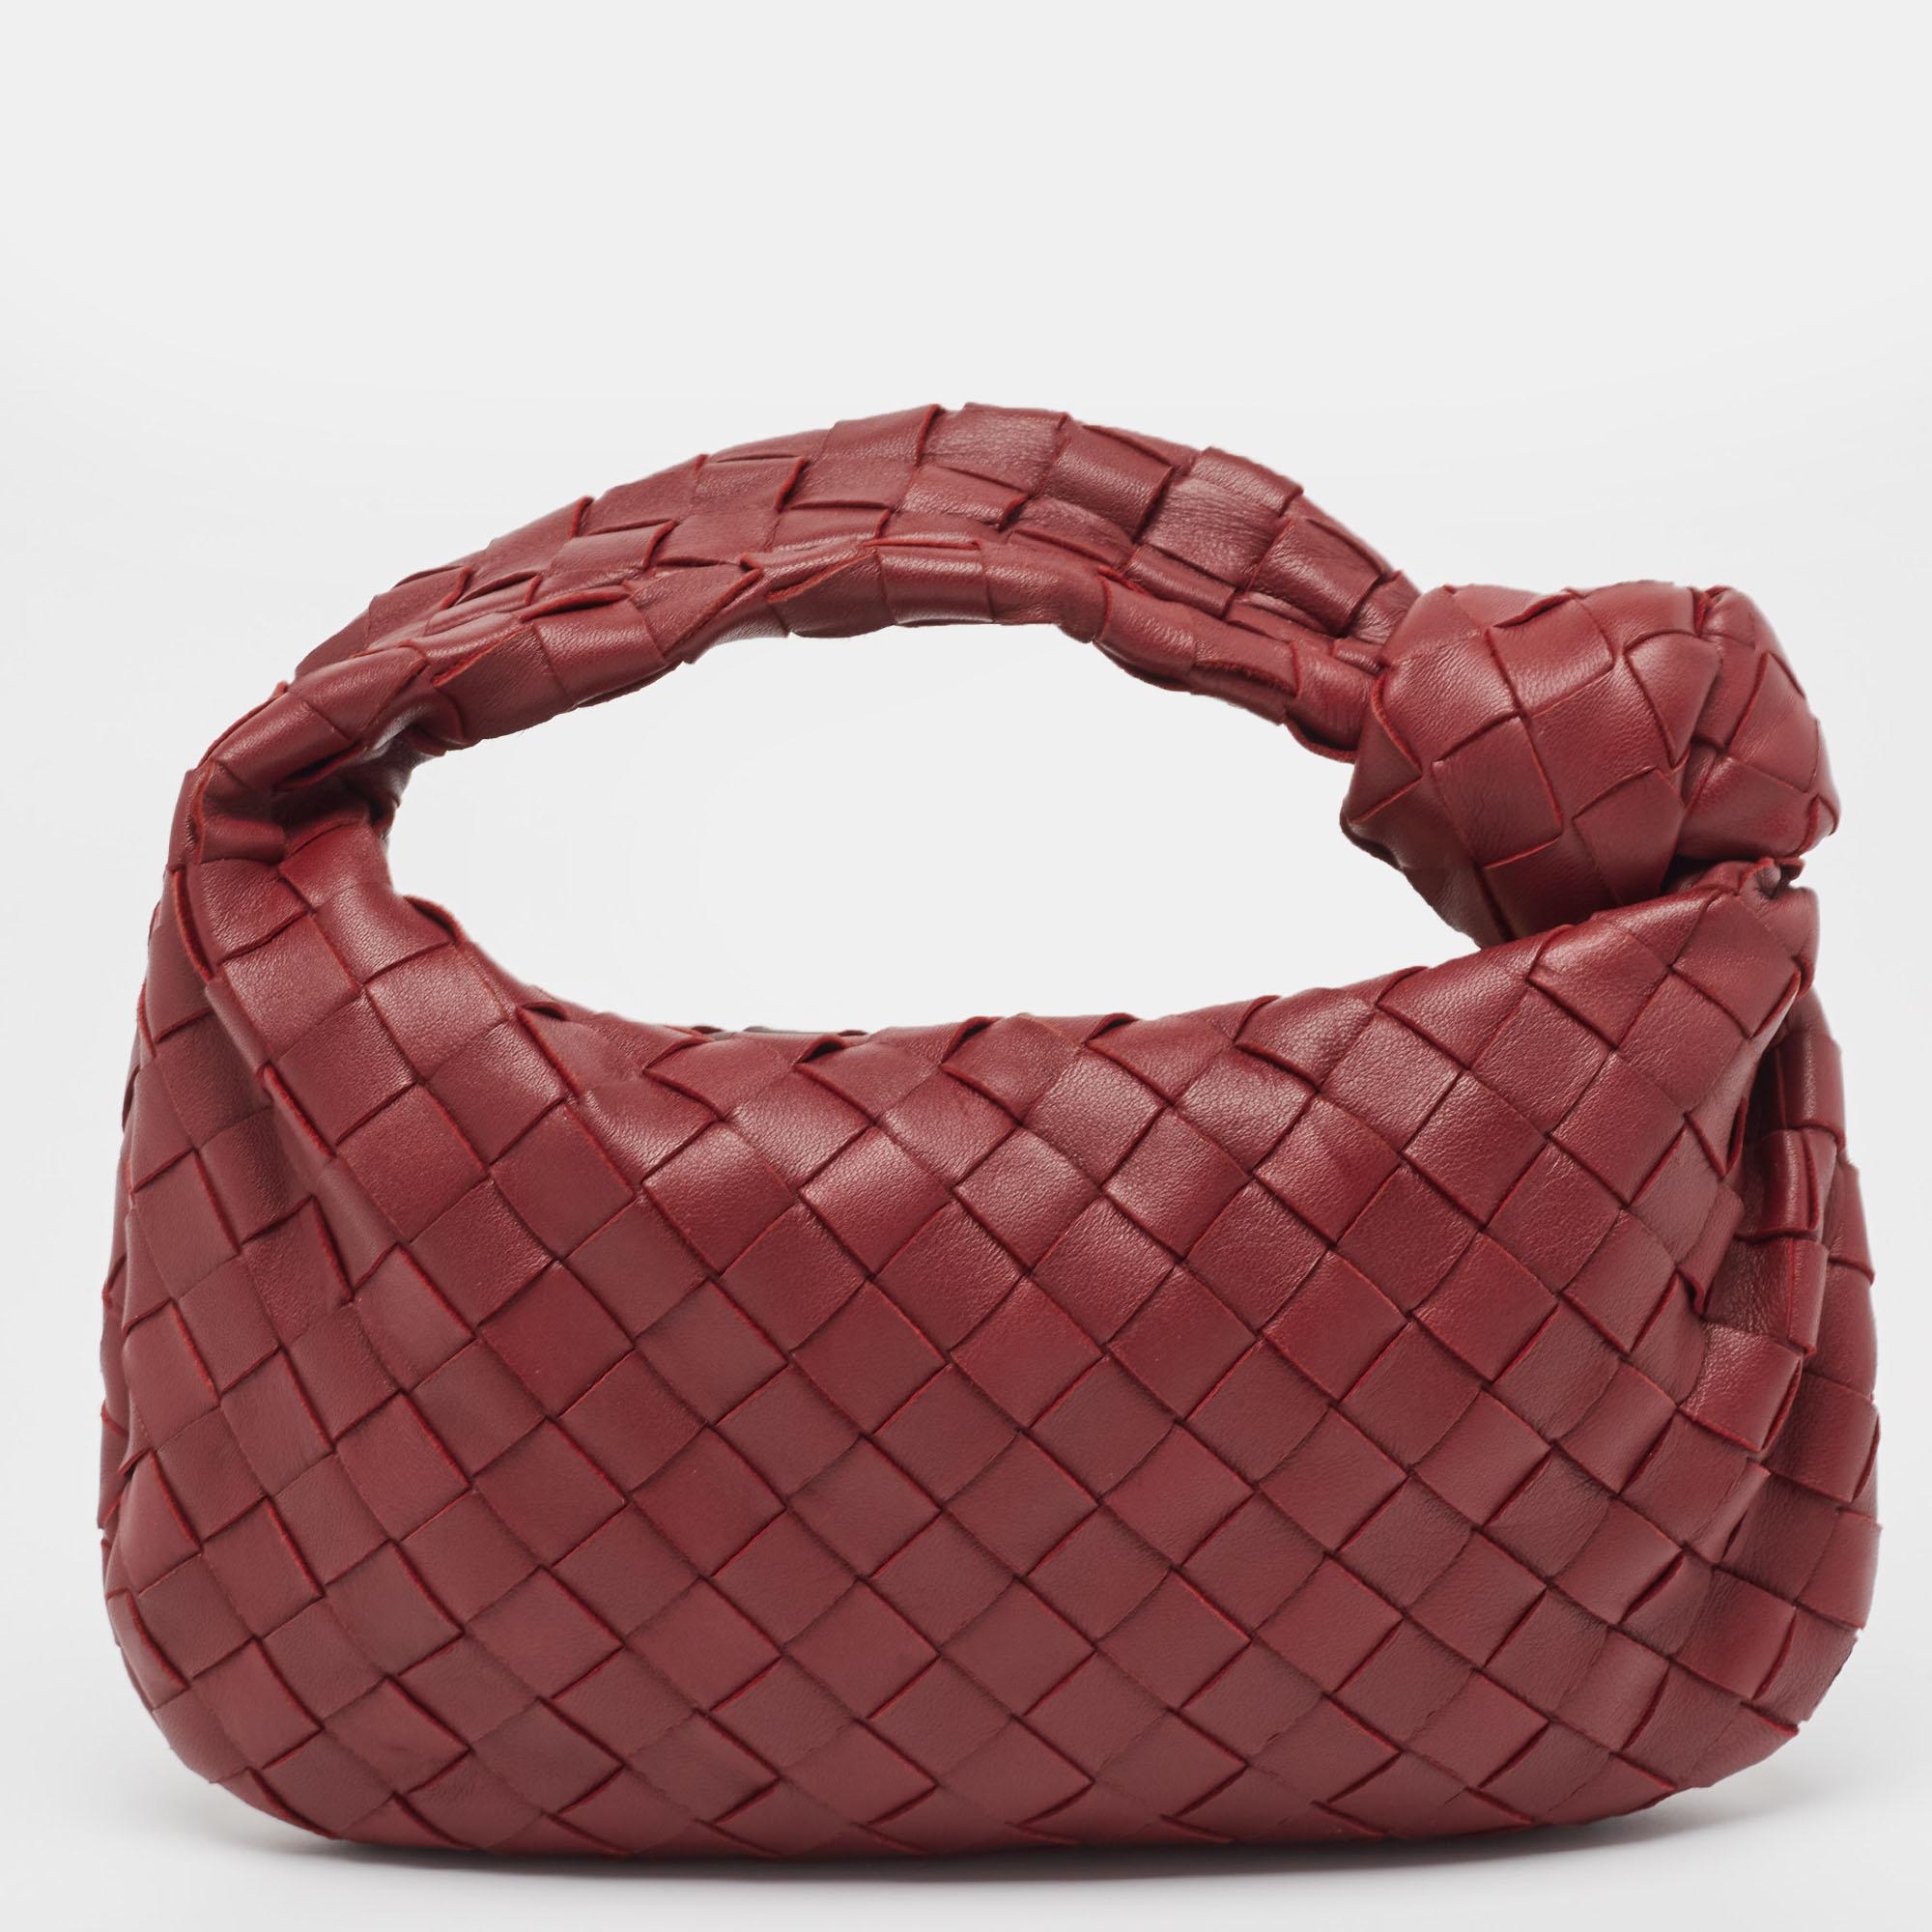 Diese Jodie Tasche von Bottega Veneta ist aus Leder in der charakteristischen Intrecciato-Webtechnik gefertigt und hat eine nahtlose Silhouette. Diese Mini-Tasche, die Eleganz und subtilen Charme verkörpert, wird von einem geknoteten Henkel